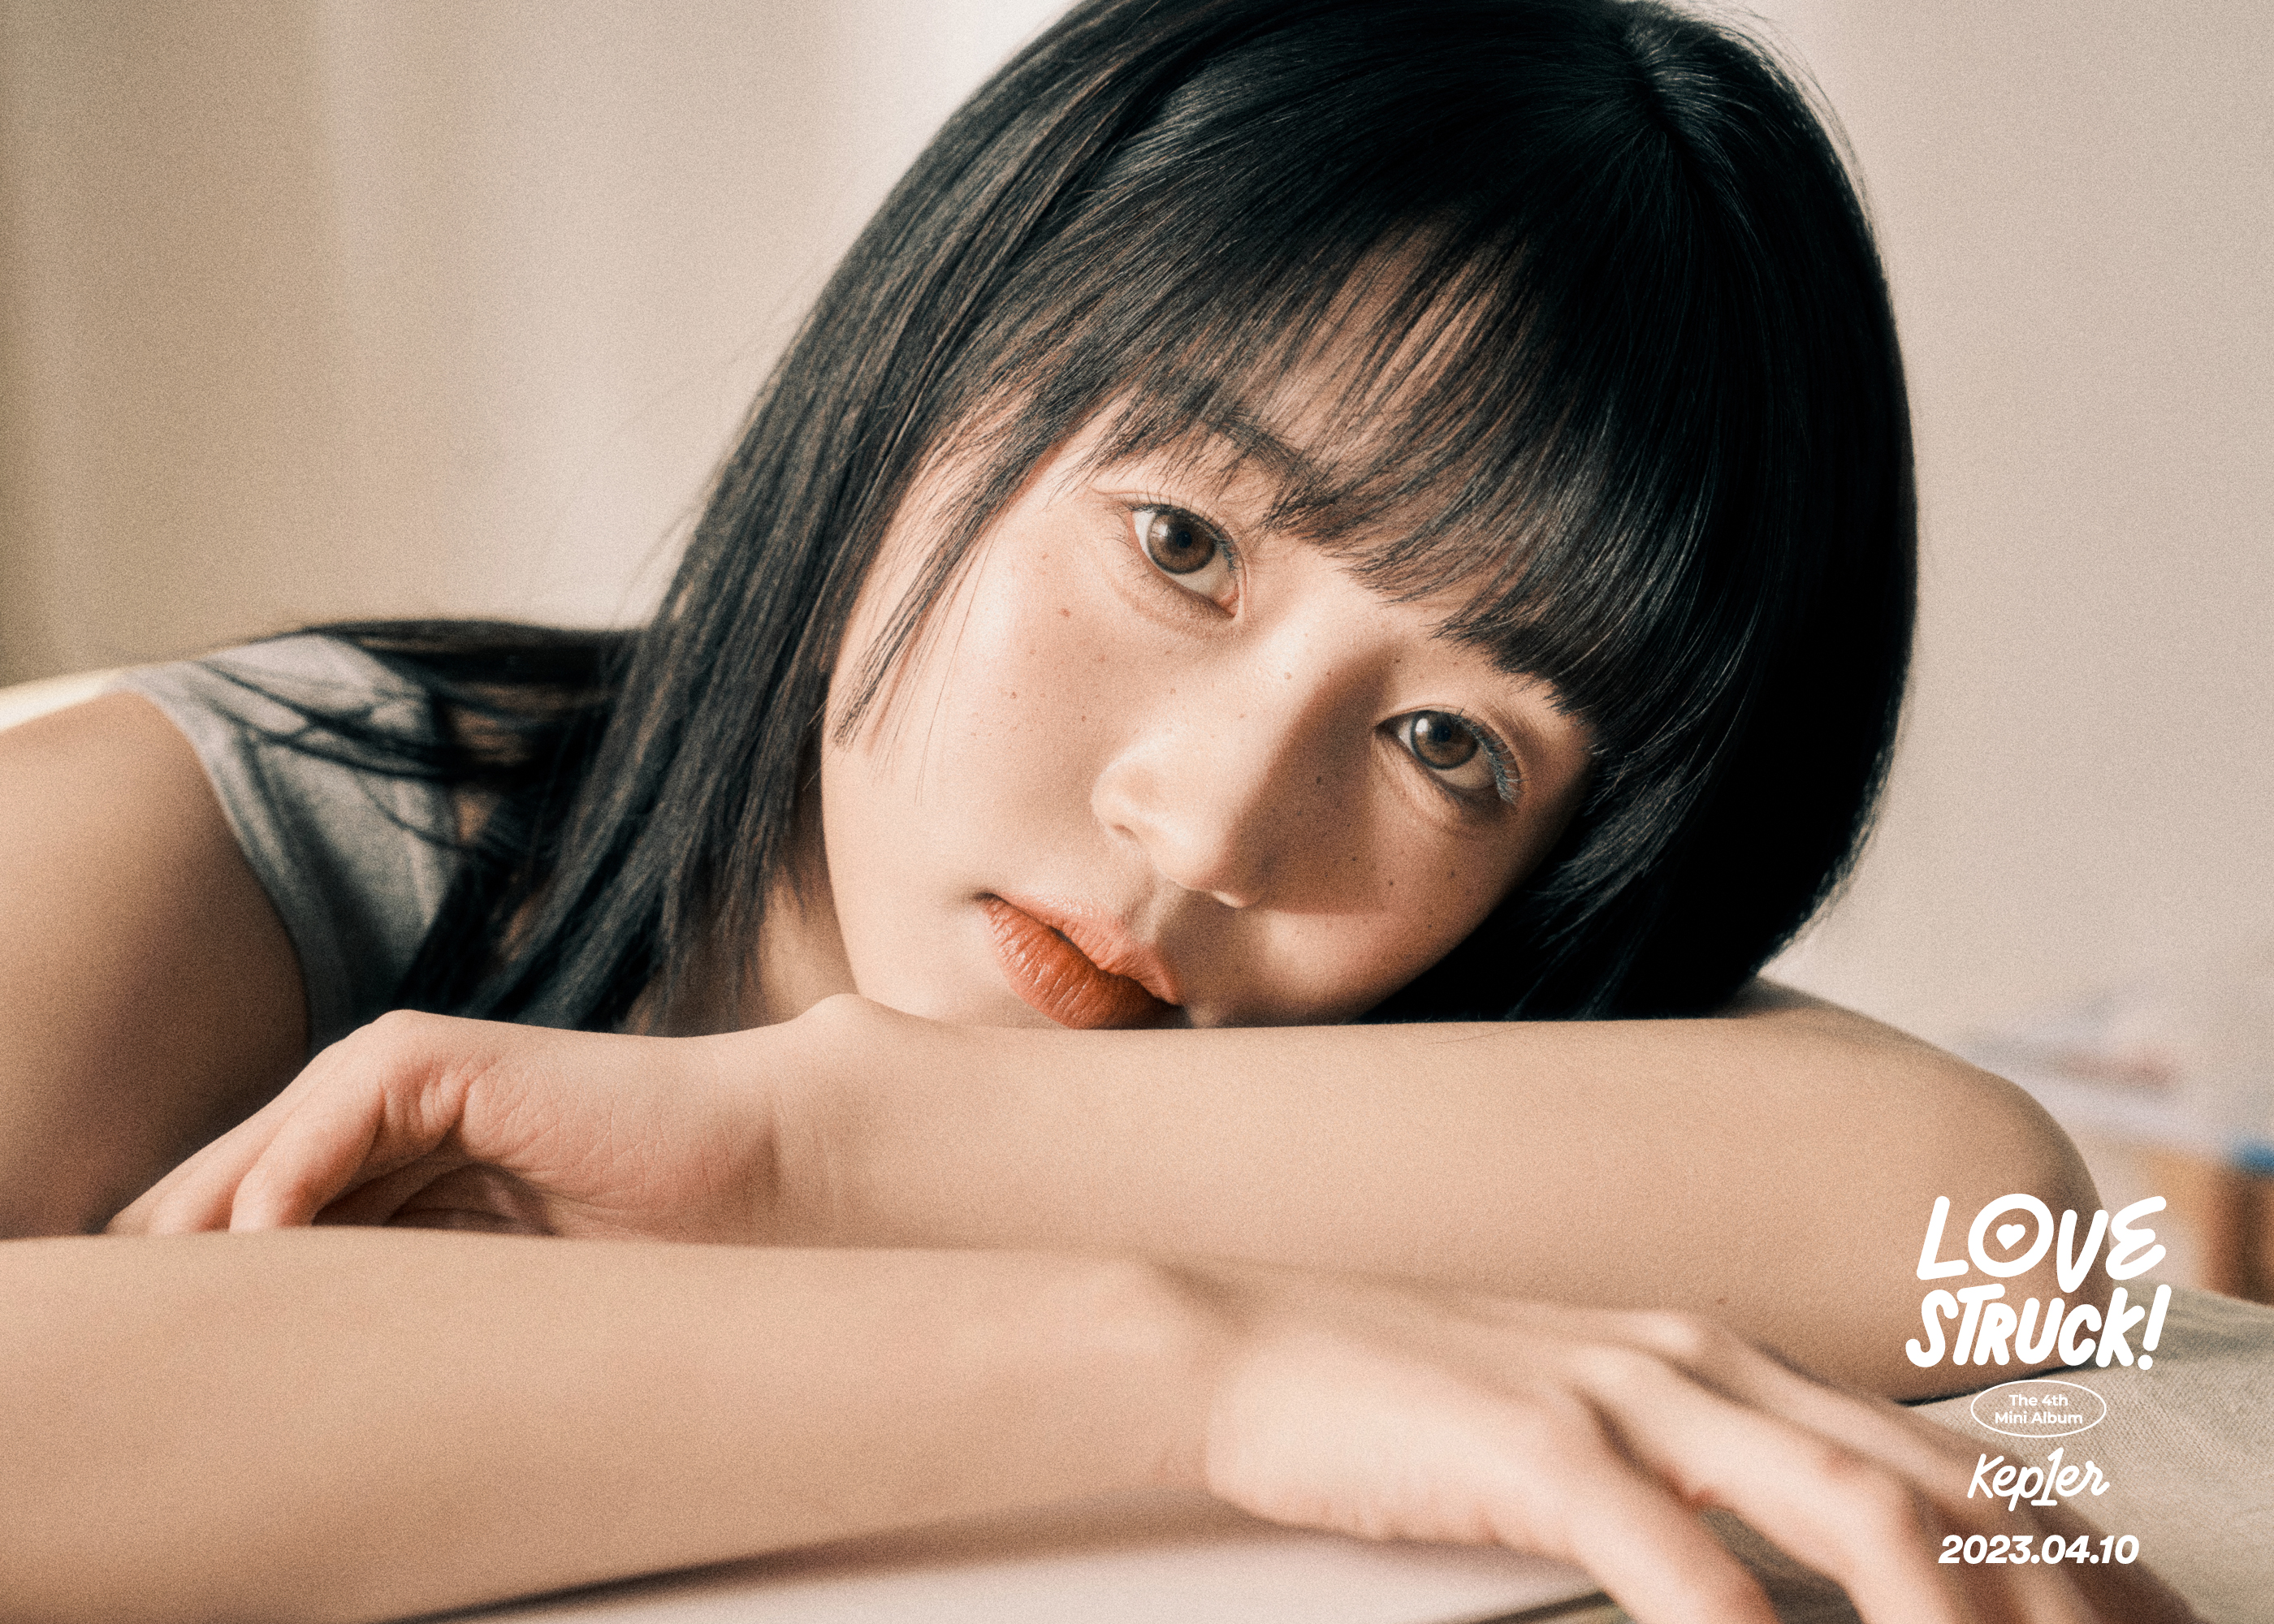 [정보/소식] 케플러, 미니 4집 'LOVESTRUCK!' 첫 콘셉트 포토 공개..달달 눈맞춤 | 인스티즈